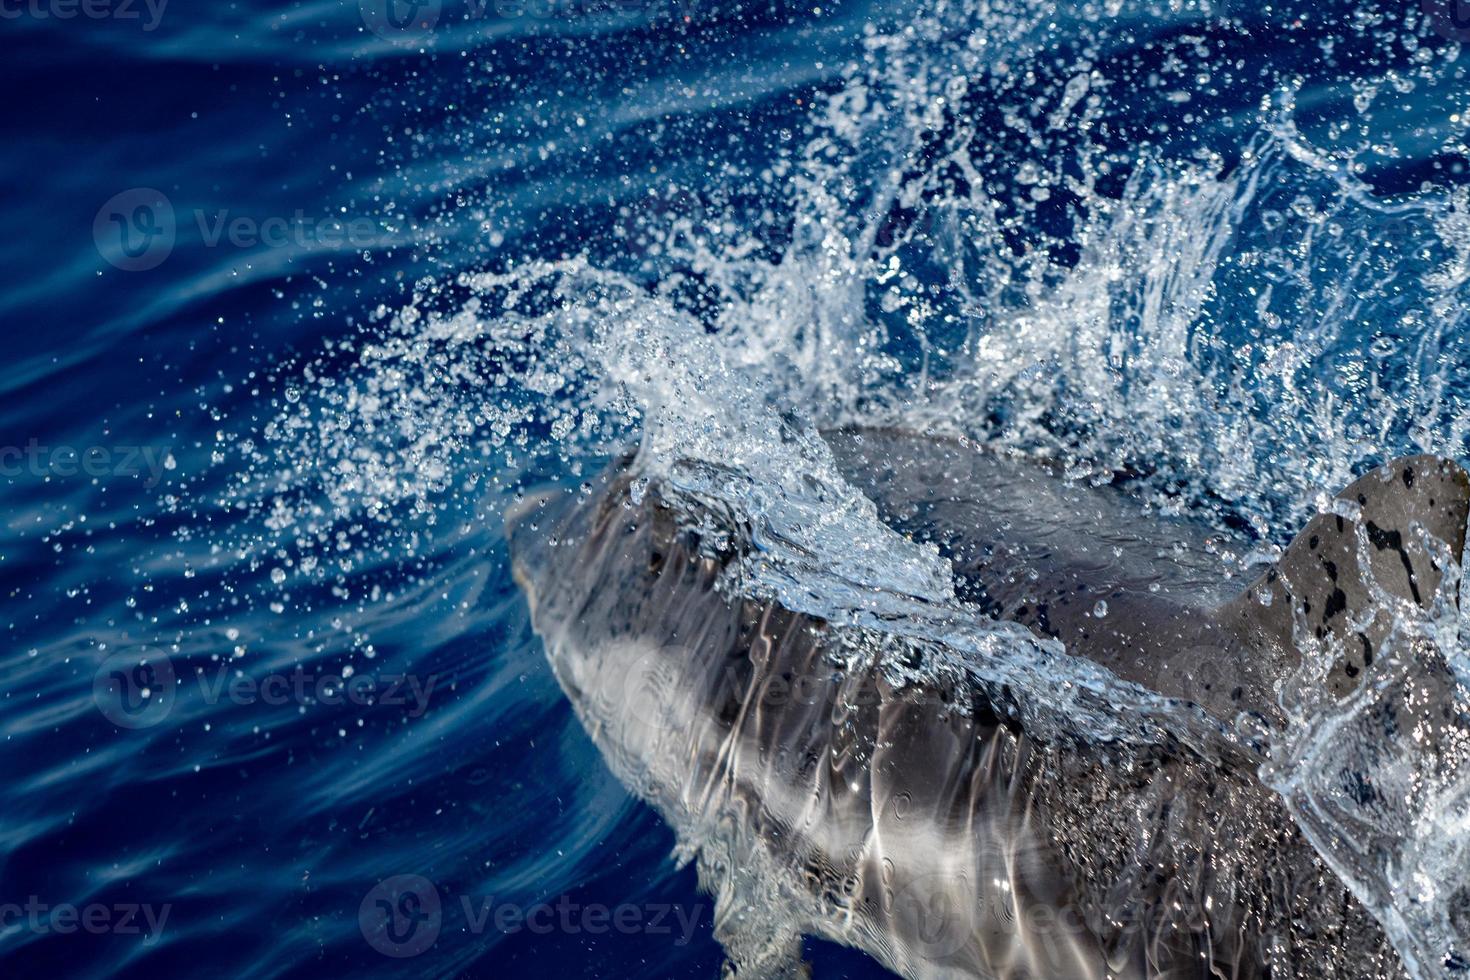 Delphin beim Springen in das tiefblaue Meer foto